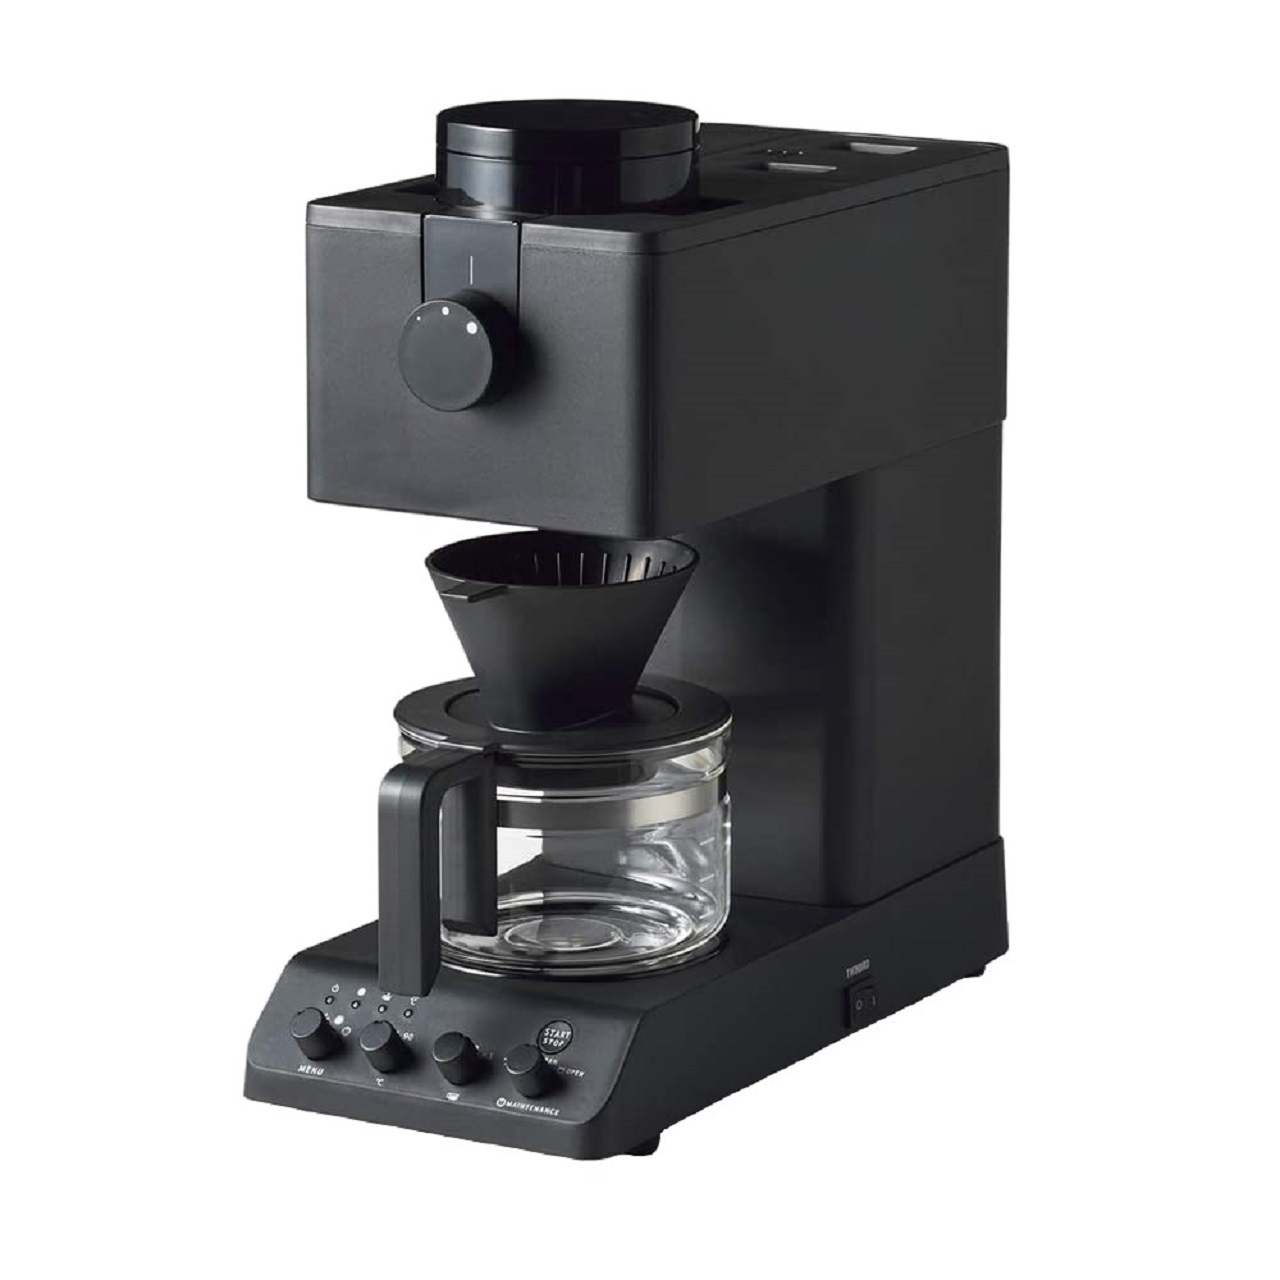 ツインバードCM-D457B全自動コーヒーメーカー